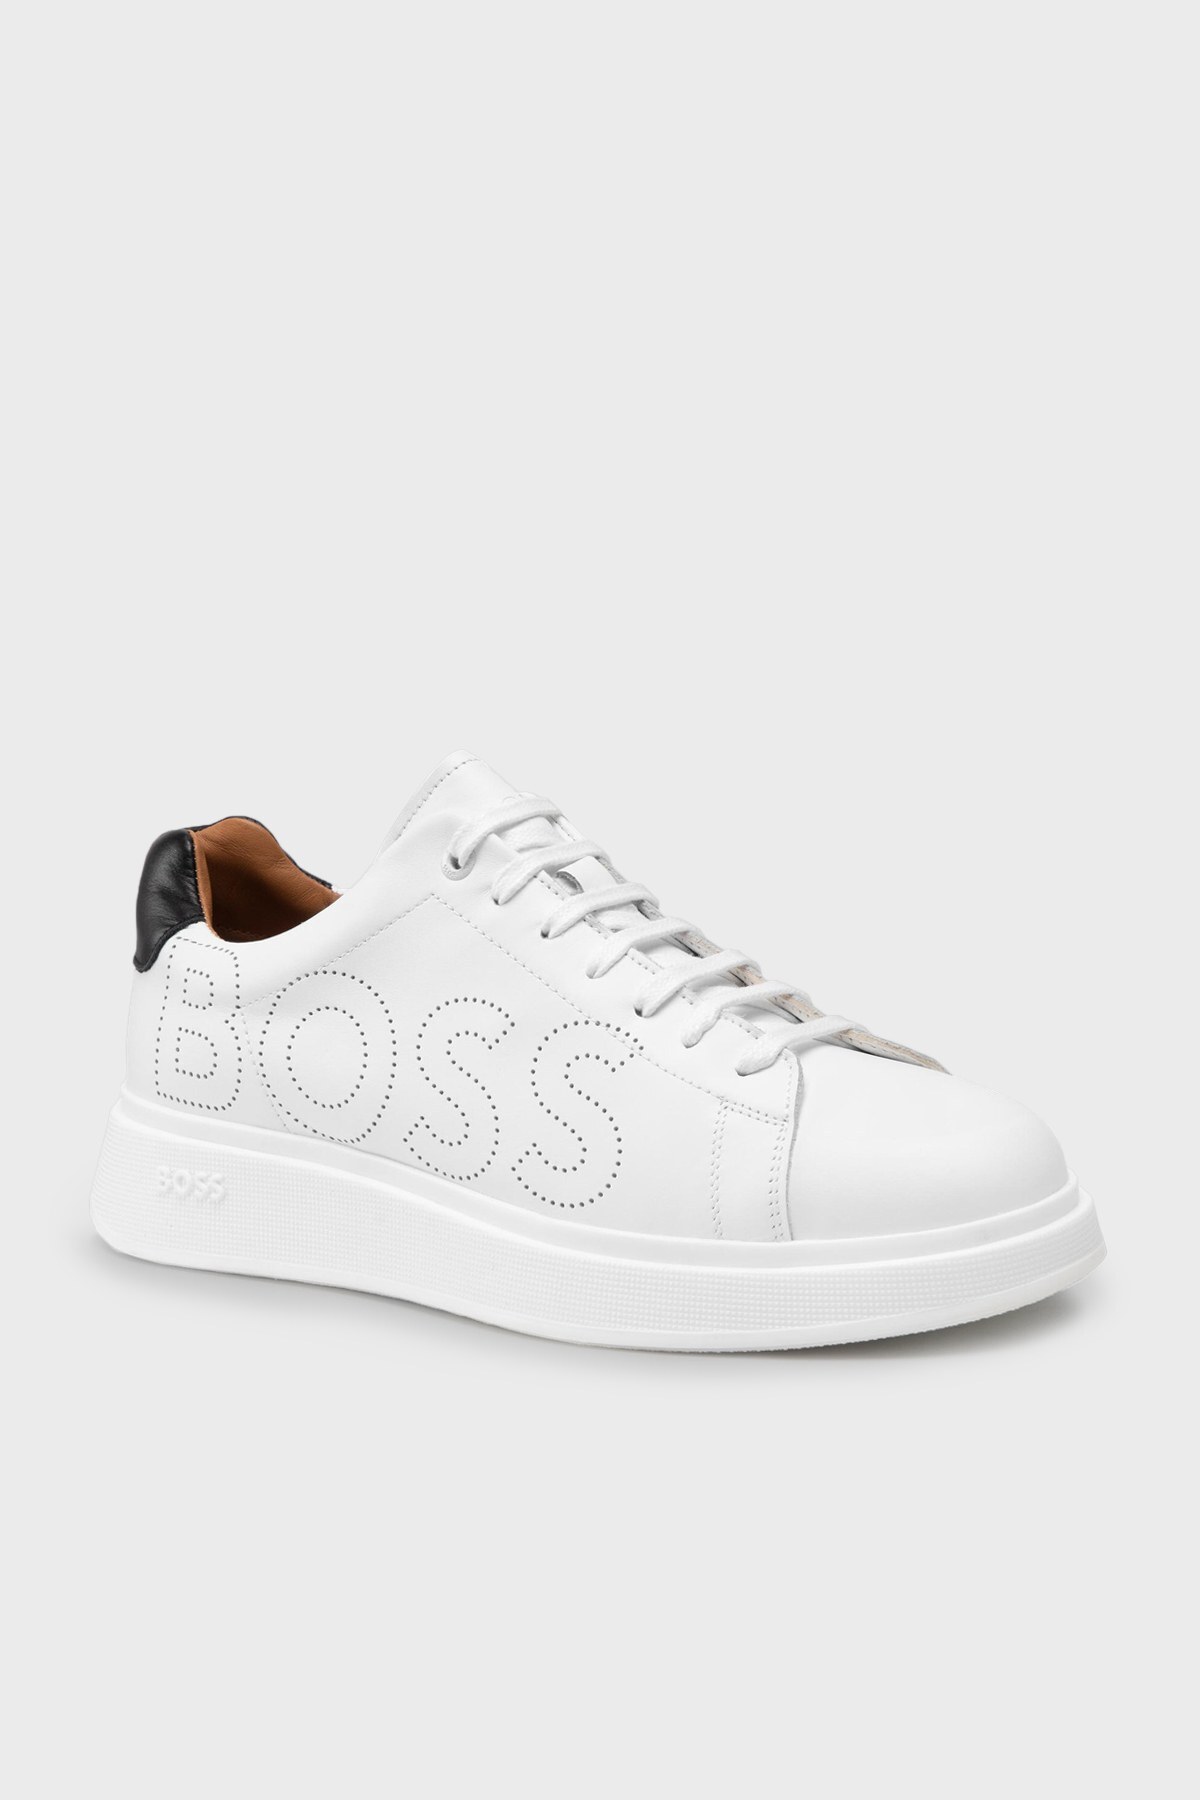 Boss Logolu Hakiki Deri Erkek Ayakkabı 50470944 100 BEYAZ